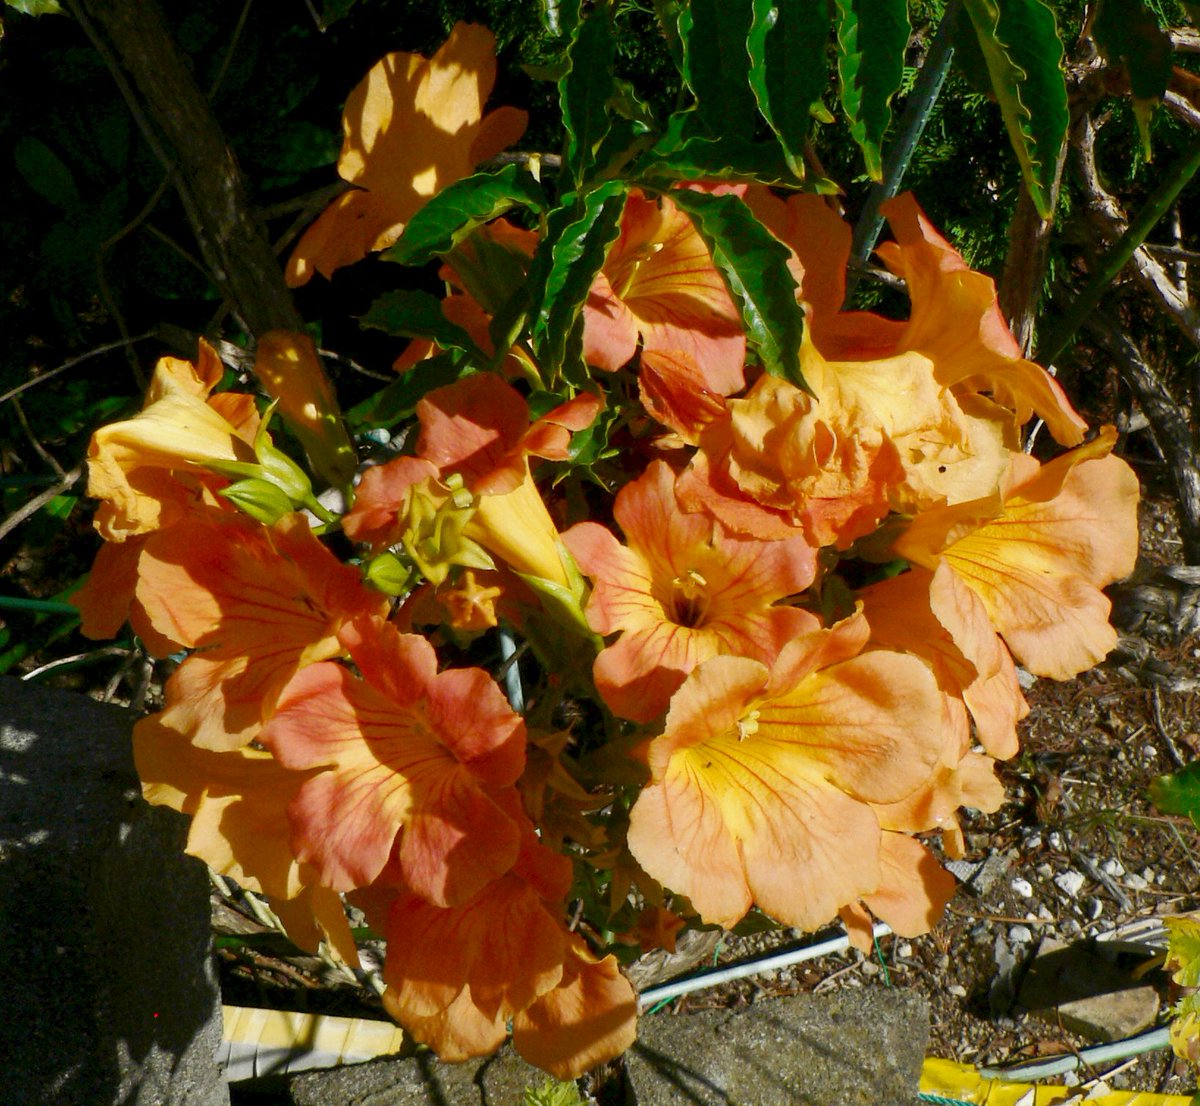 こころんグリーン V Twitter 近所の空き地に オレンジ色のノウゼンカズラの花が咲いていました 大柄の花が房になって咲いているので 目立ちます 残暑の強い日差しに負けない 明るい花です ノウゼンカズラ オレンジ色 大柄の花 房 残暑 夏の花 園芸品種